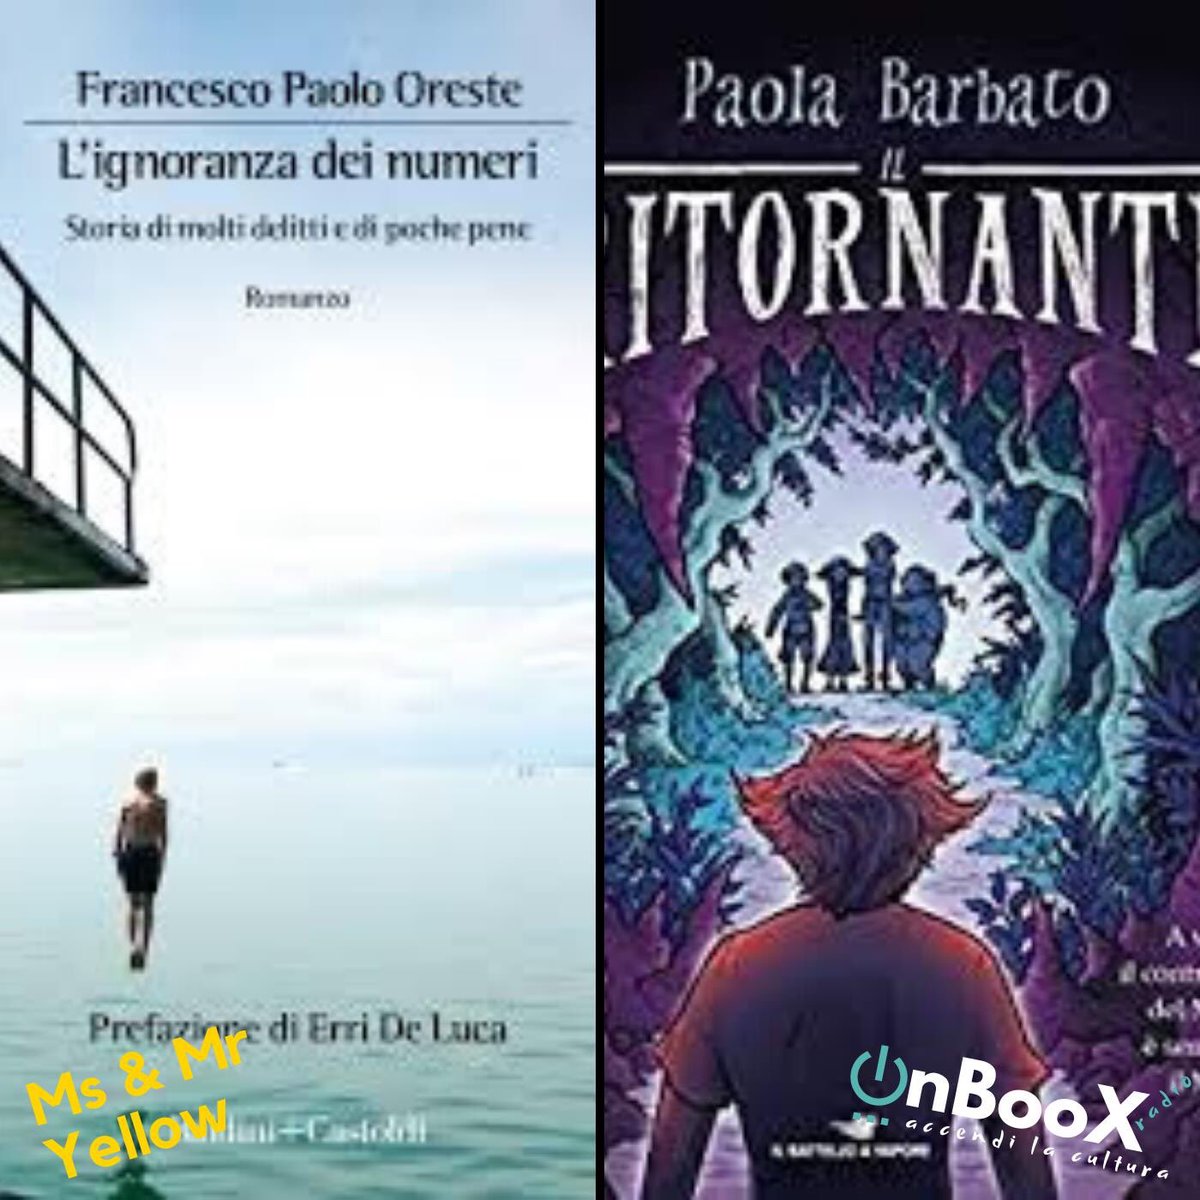 Oggi su Onboox Radio alle 13.00 #msemryellow con @ochaurobora e #francescopaolooreste le recensioni dei loro romanzi.
#follipergialli @BaldiniCastoldi #ilbattelloavapore